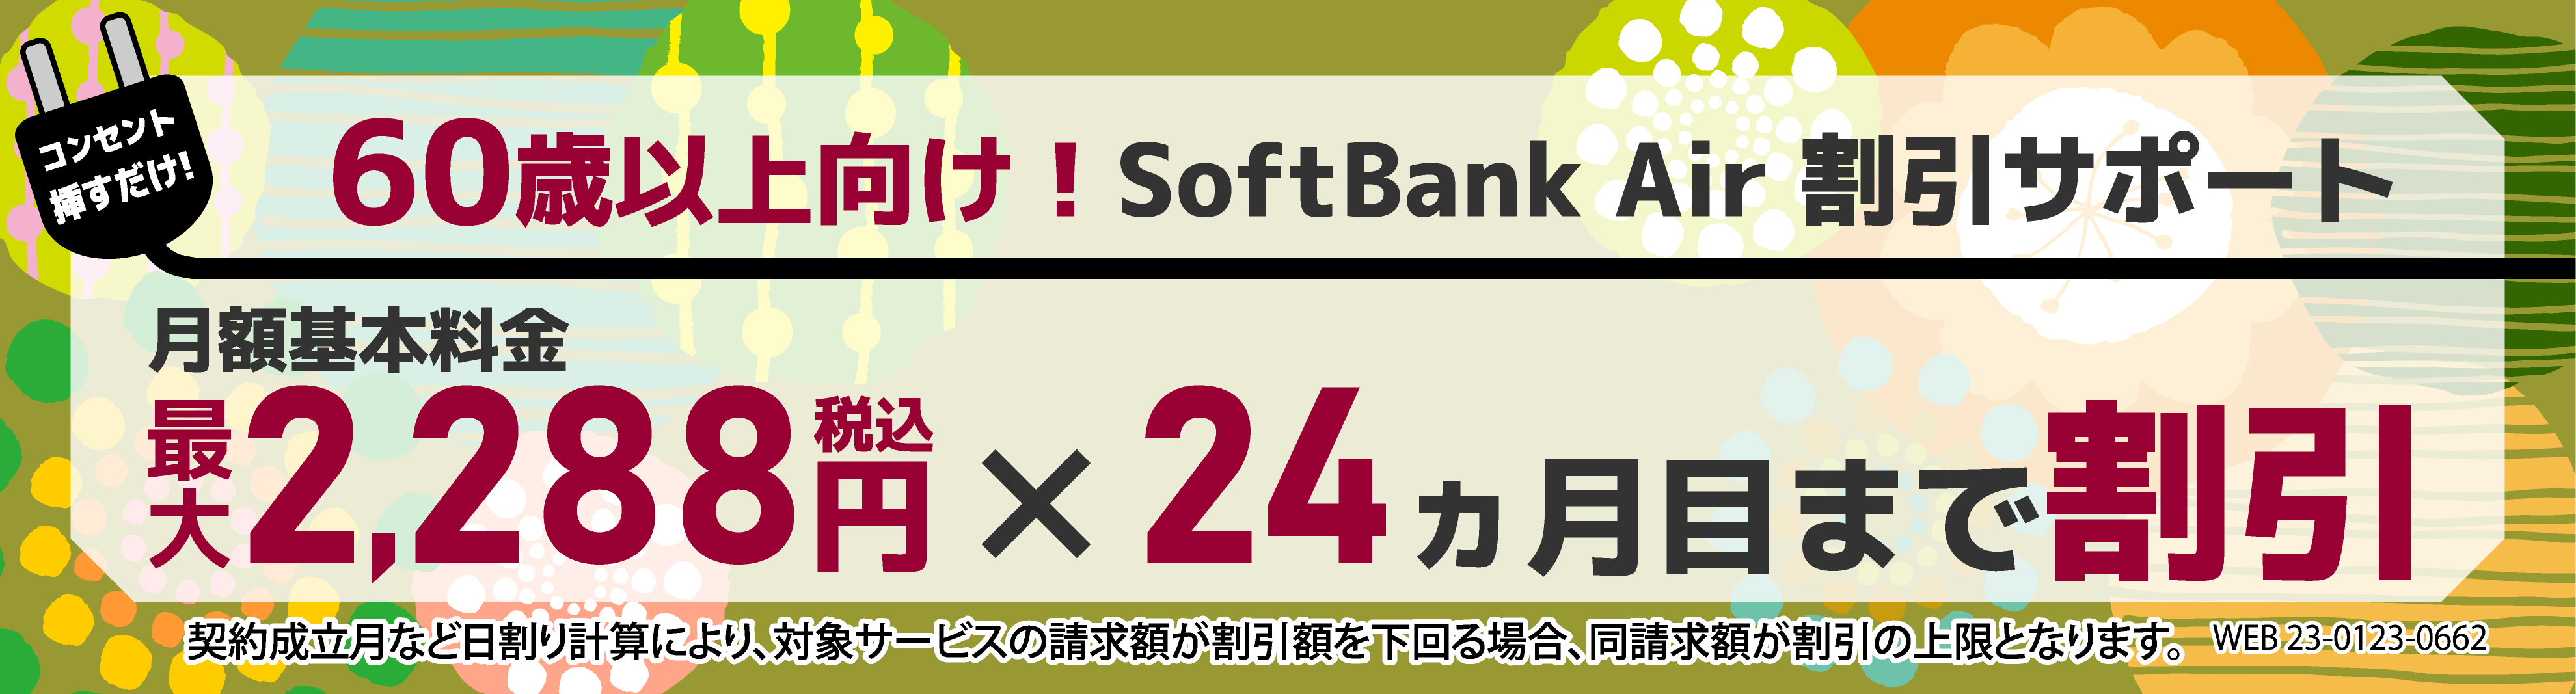 60歳以上向け！<br>SoftBank Air 割引サポート